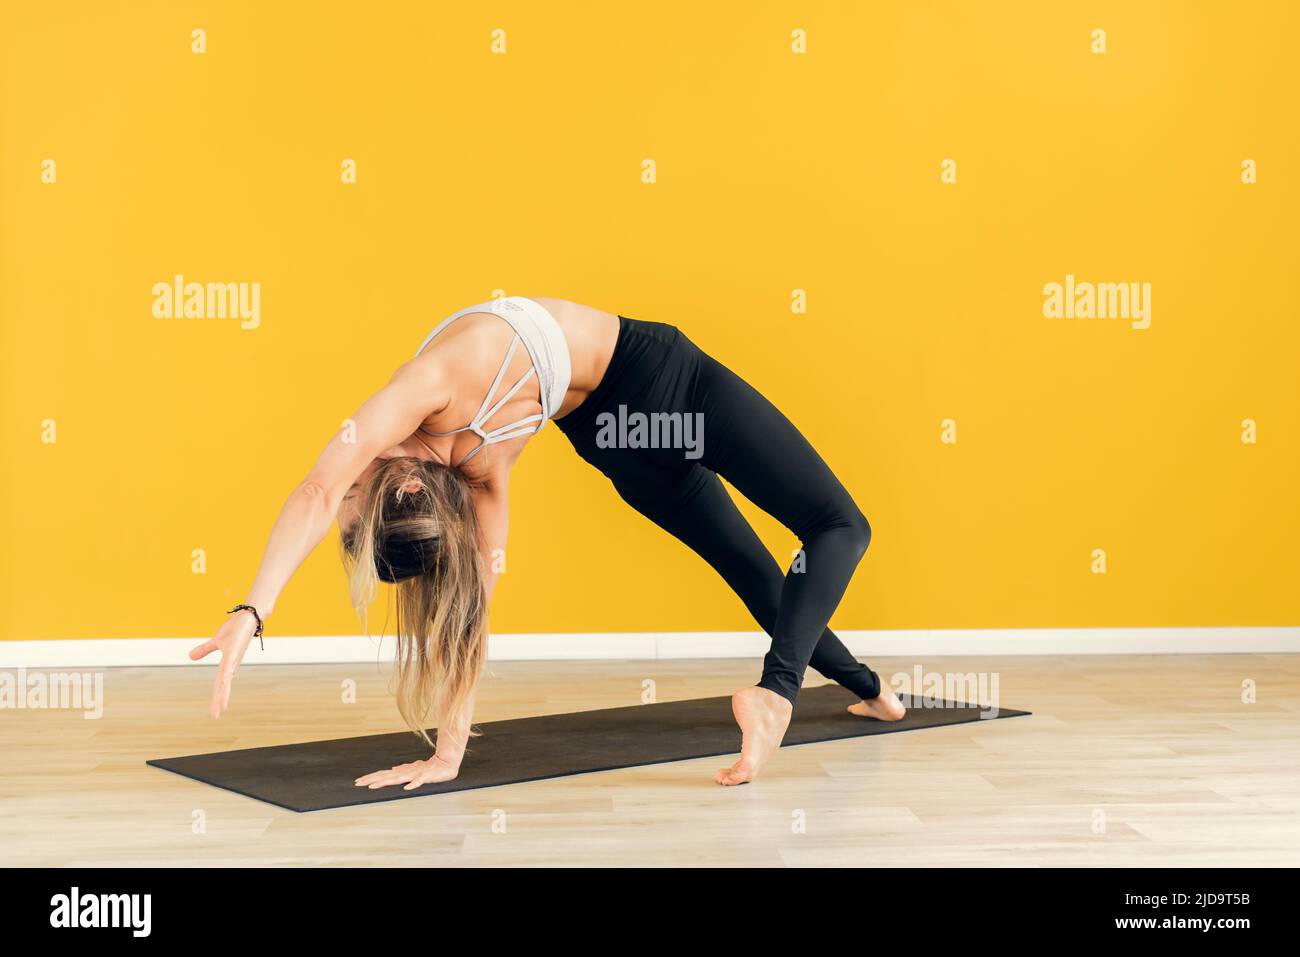 Giovane donna attraente che pratica yoga, in piedi in un esercizio, indossando abbigliamento sportivo bianco e nero, sfondo giallo studio, vista laterale Foto Stock